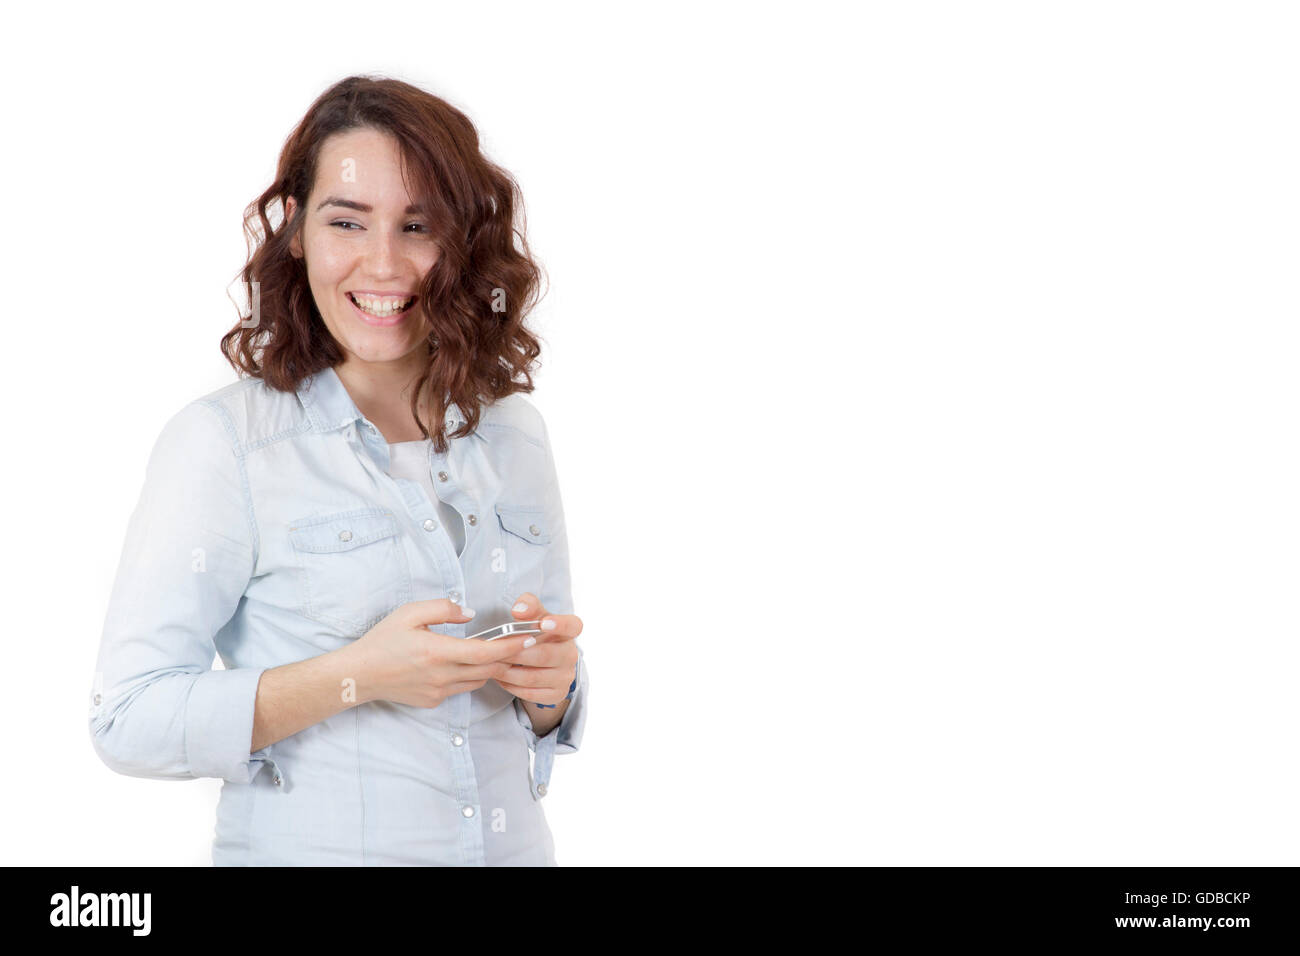 Capelli rossi felice carina ragazza giovane giocando smart phone e sorridente Foto Stock